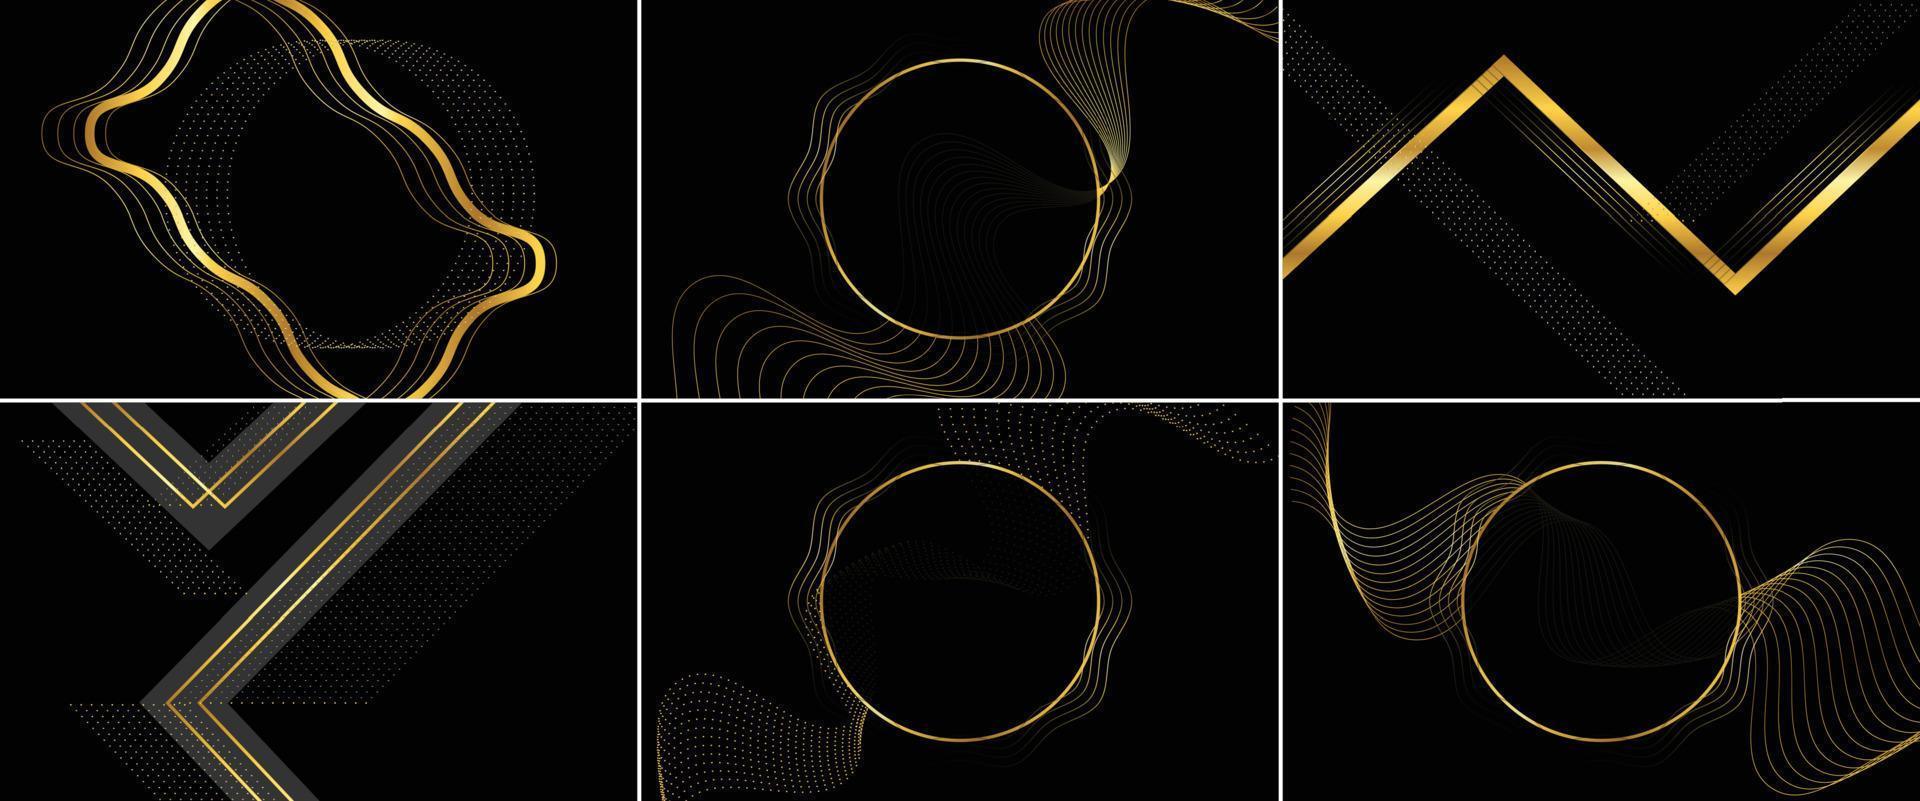 design abstrato elegante com linhas giratórias e um esquema de cores dourado e preto vetor